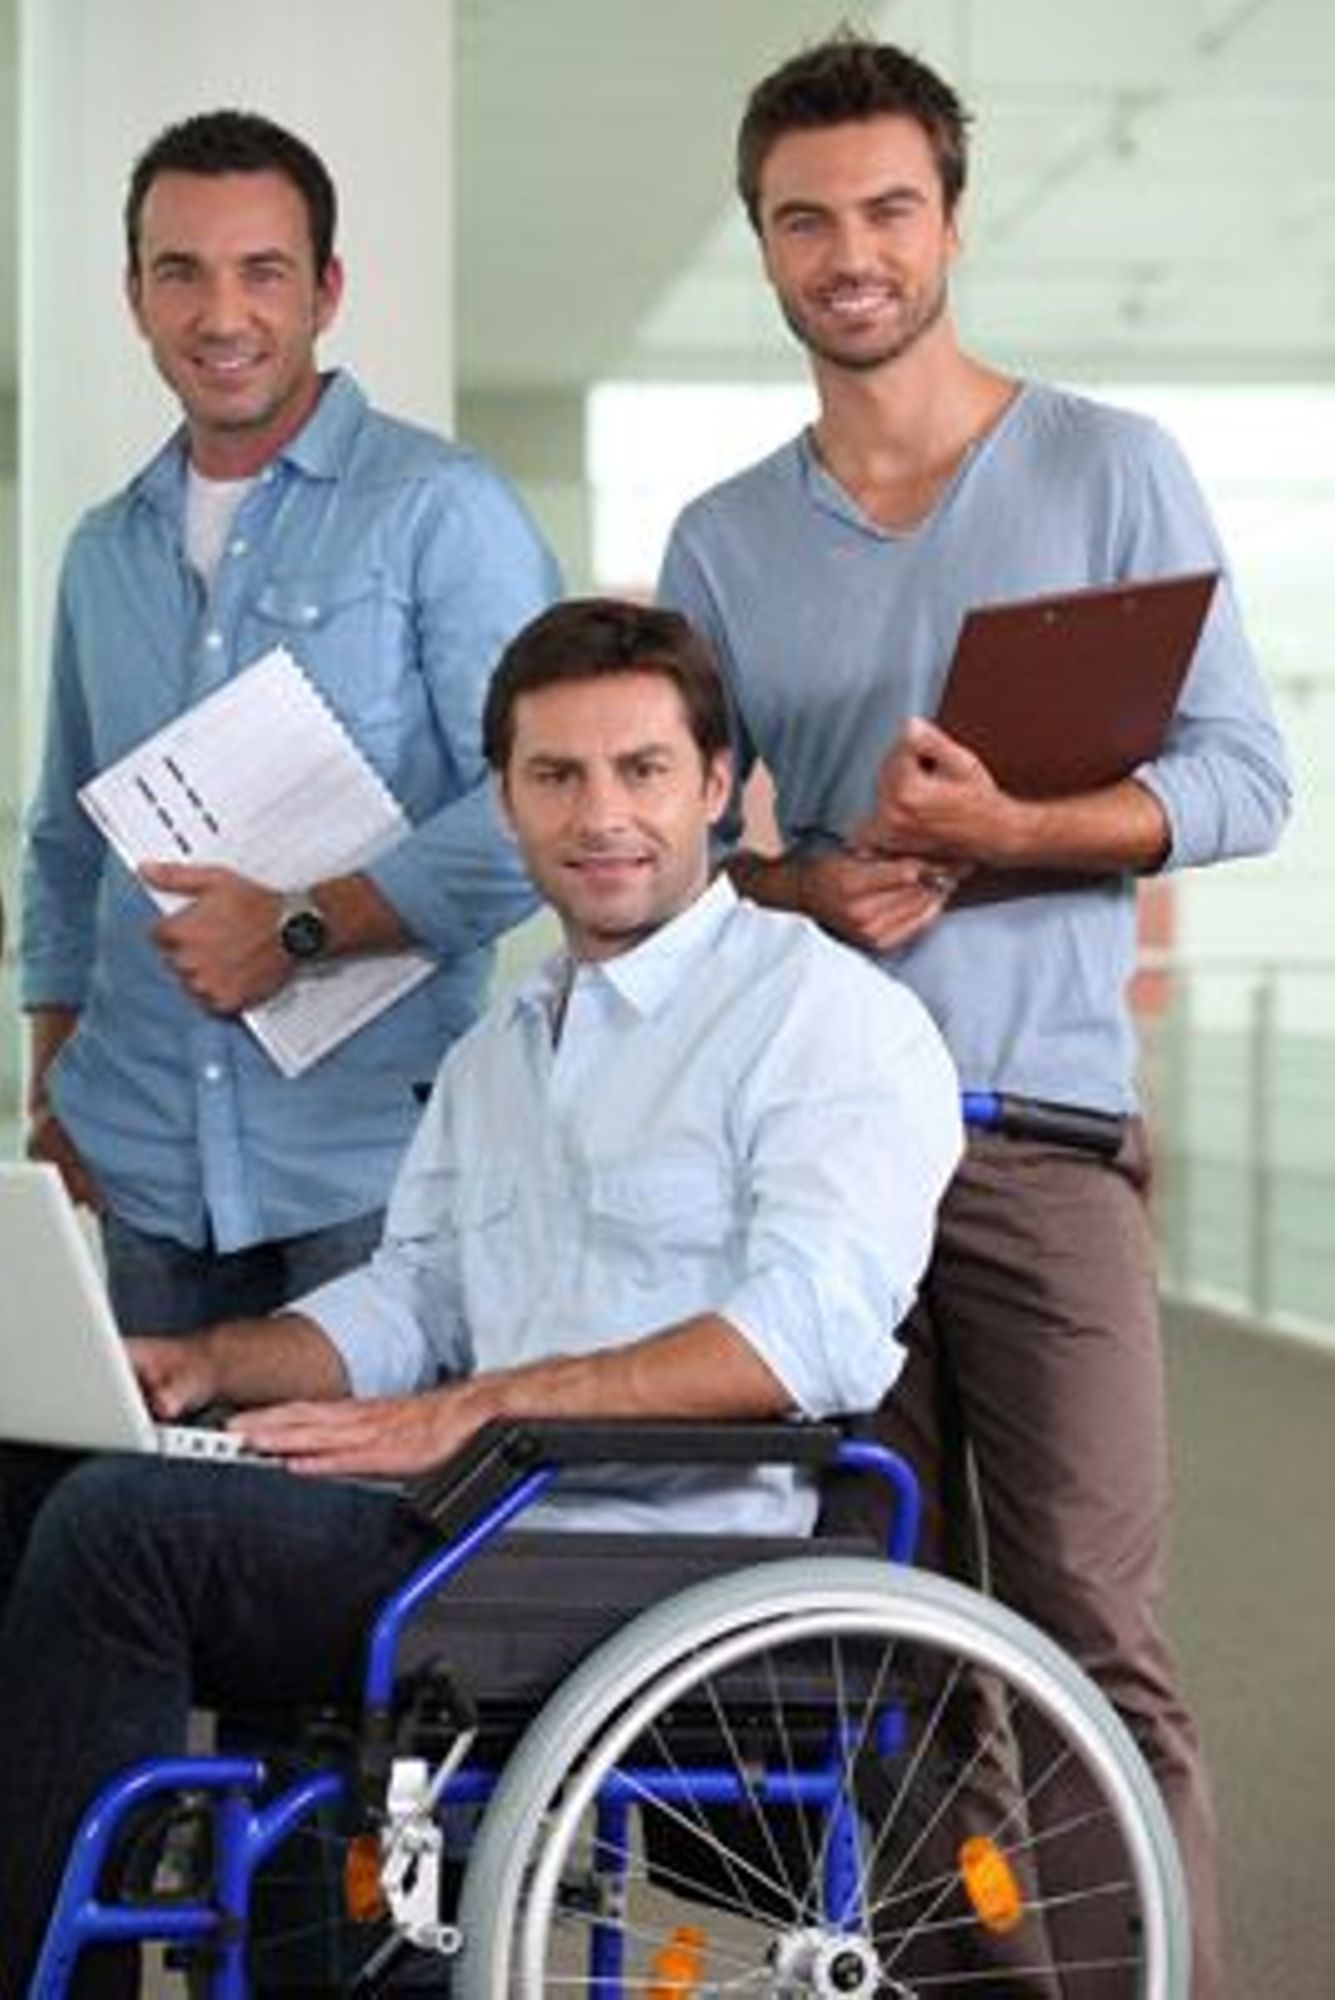 Accueil des personnes handicapées